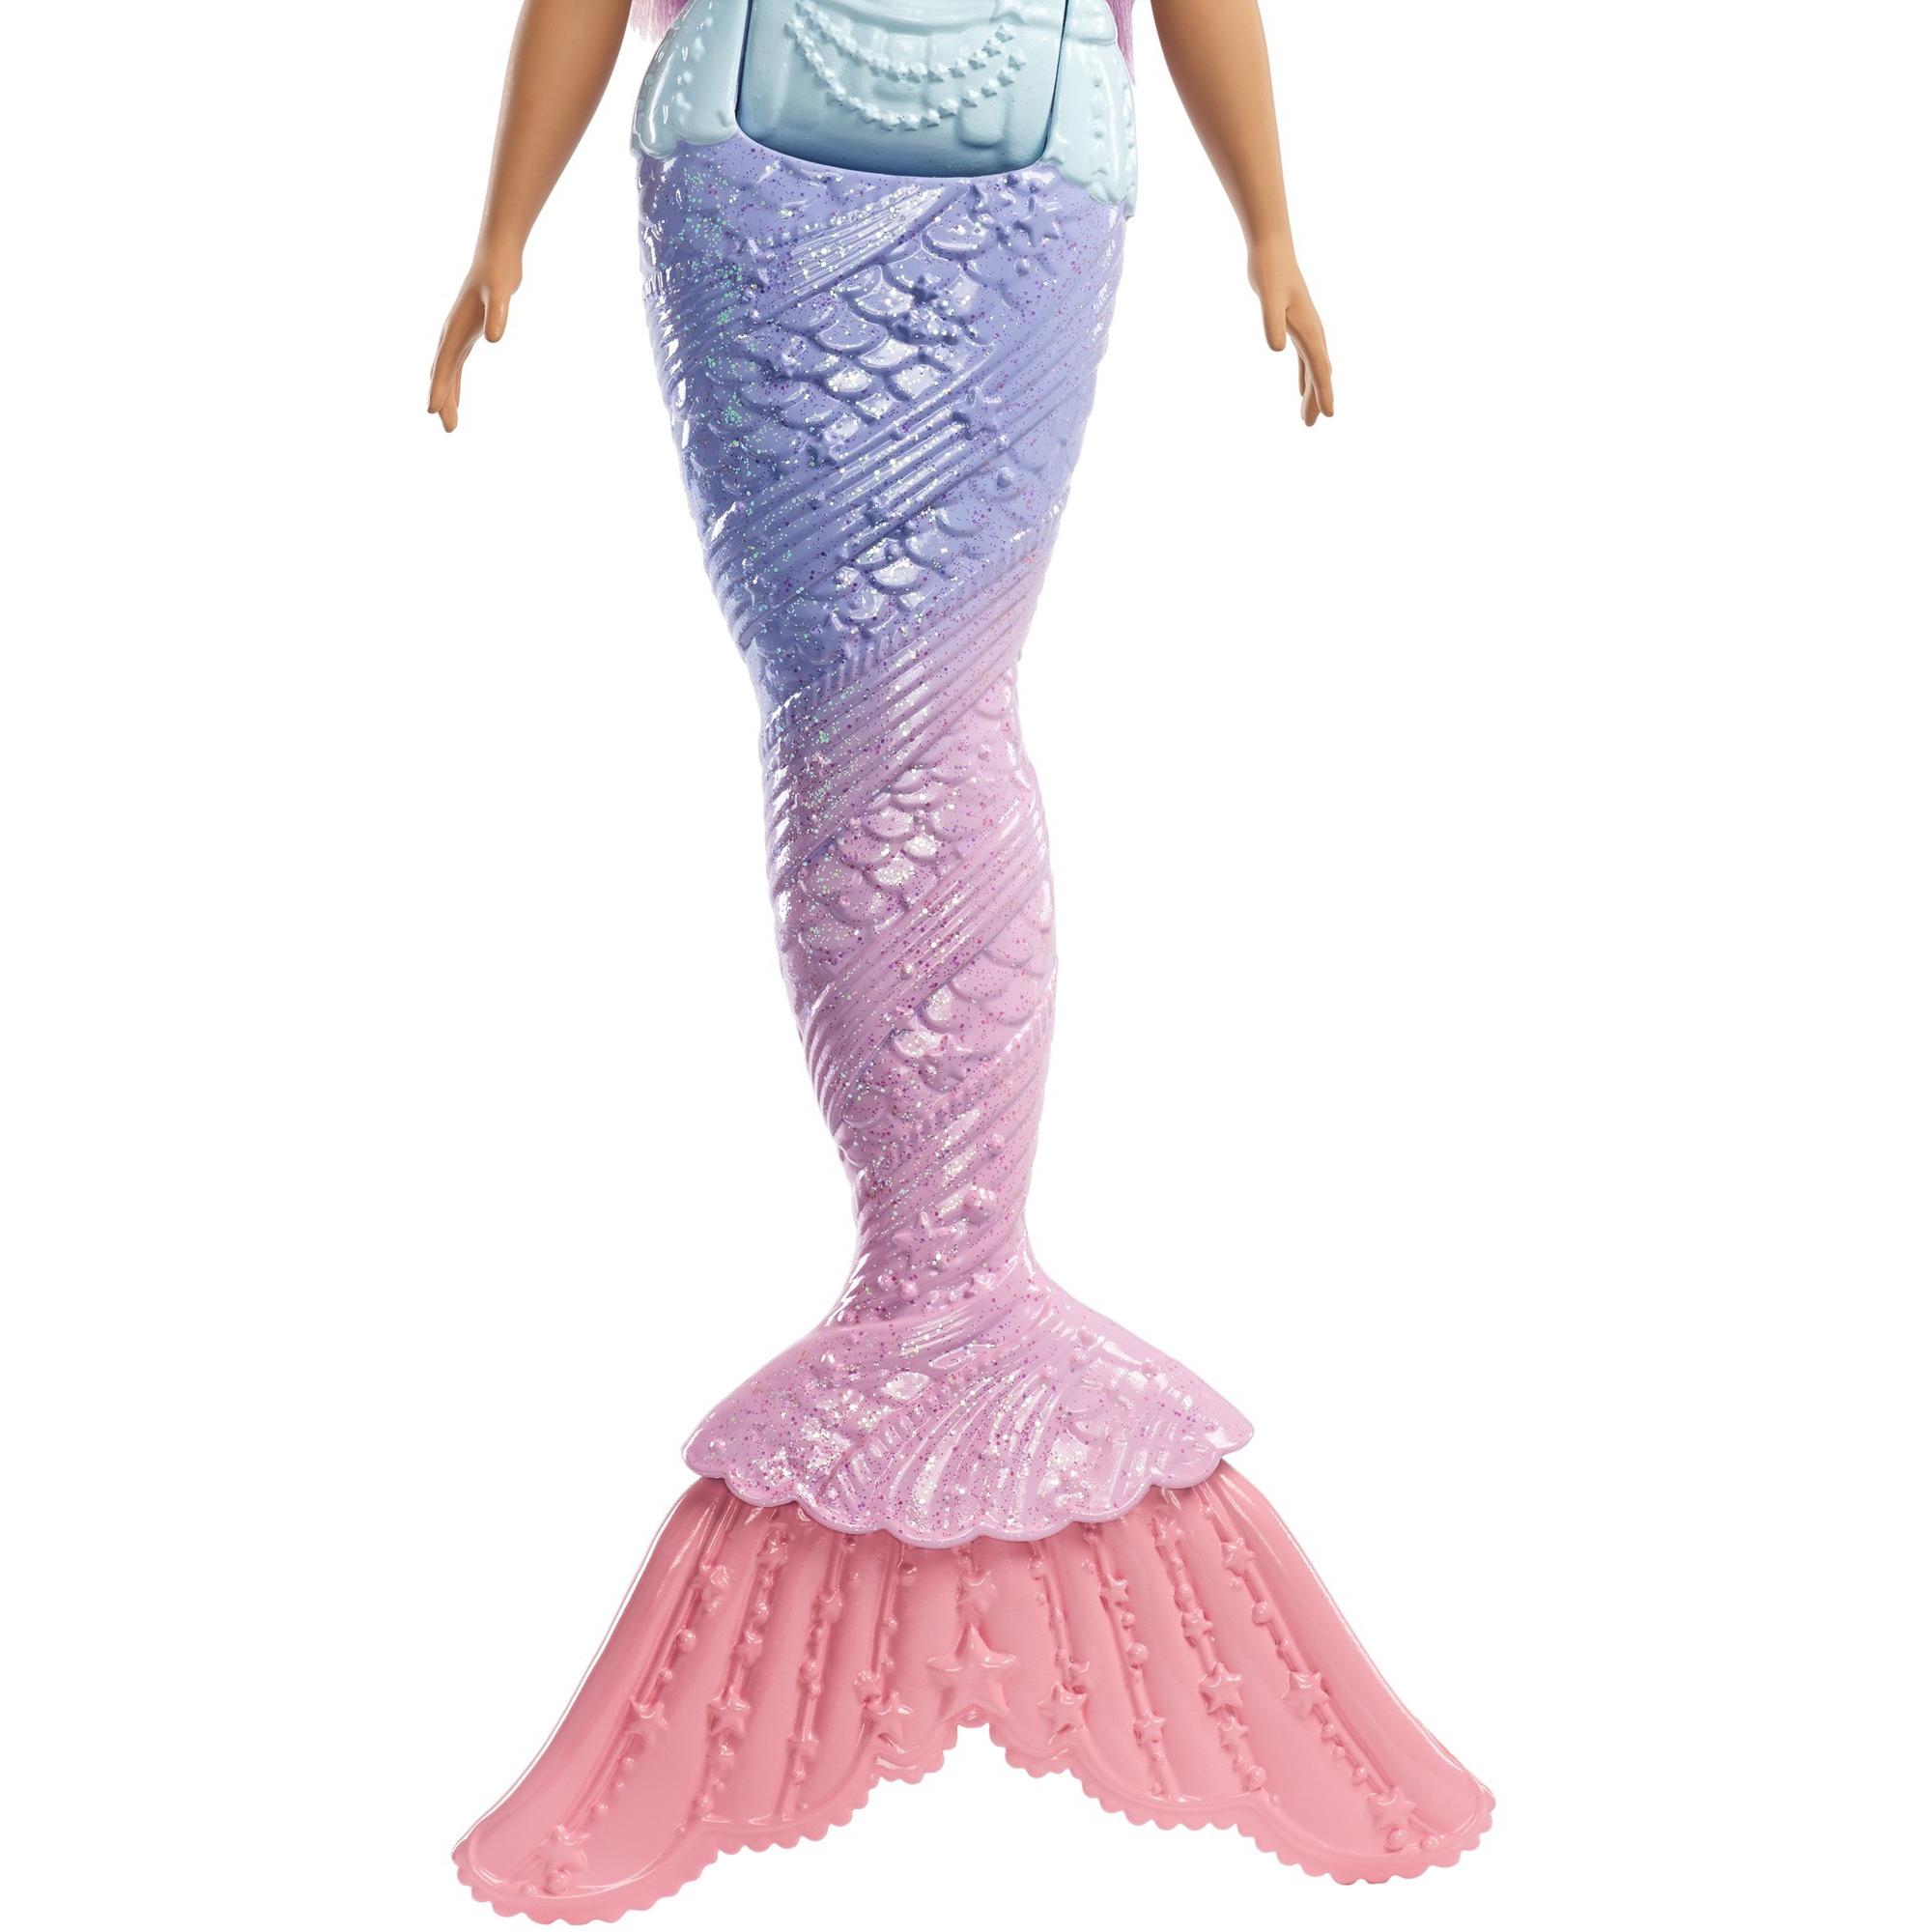 Barbie Dreamtopia Mermaid Doll with Long Purple Streaked Hair - image 5 of 8